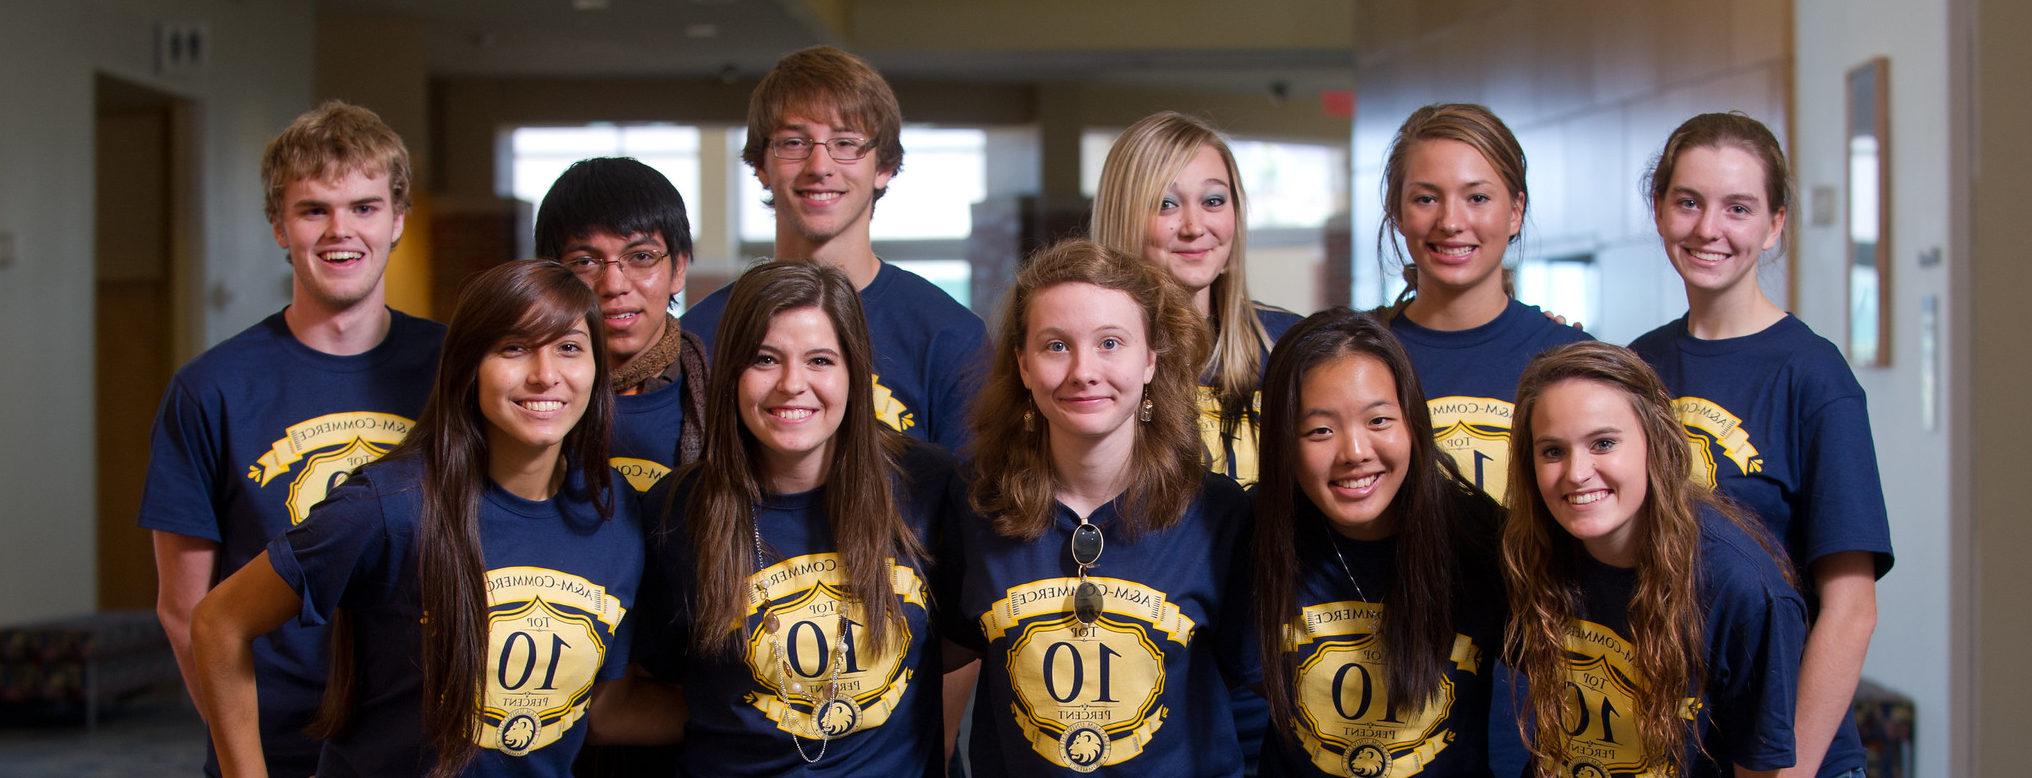 一群高中生穿着印有“前10%高中学生”字样的t恤.